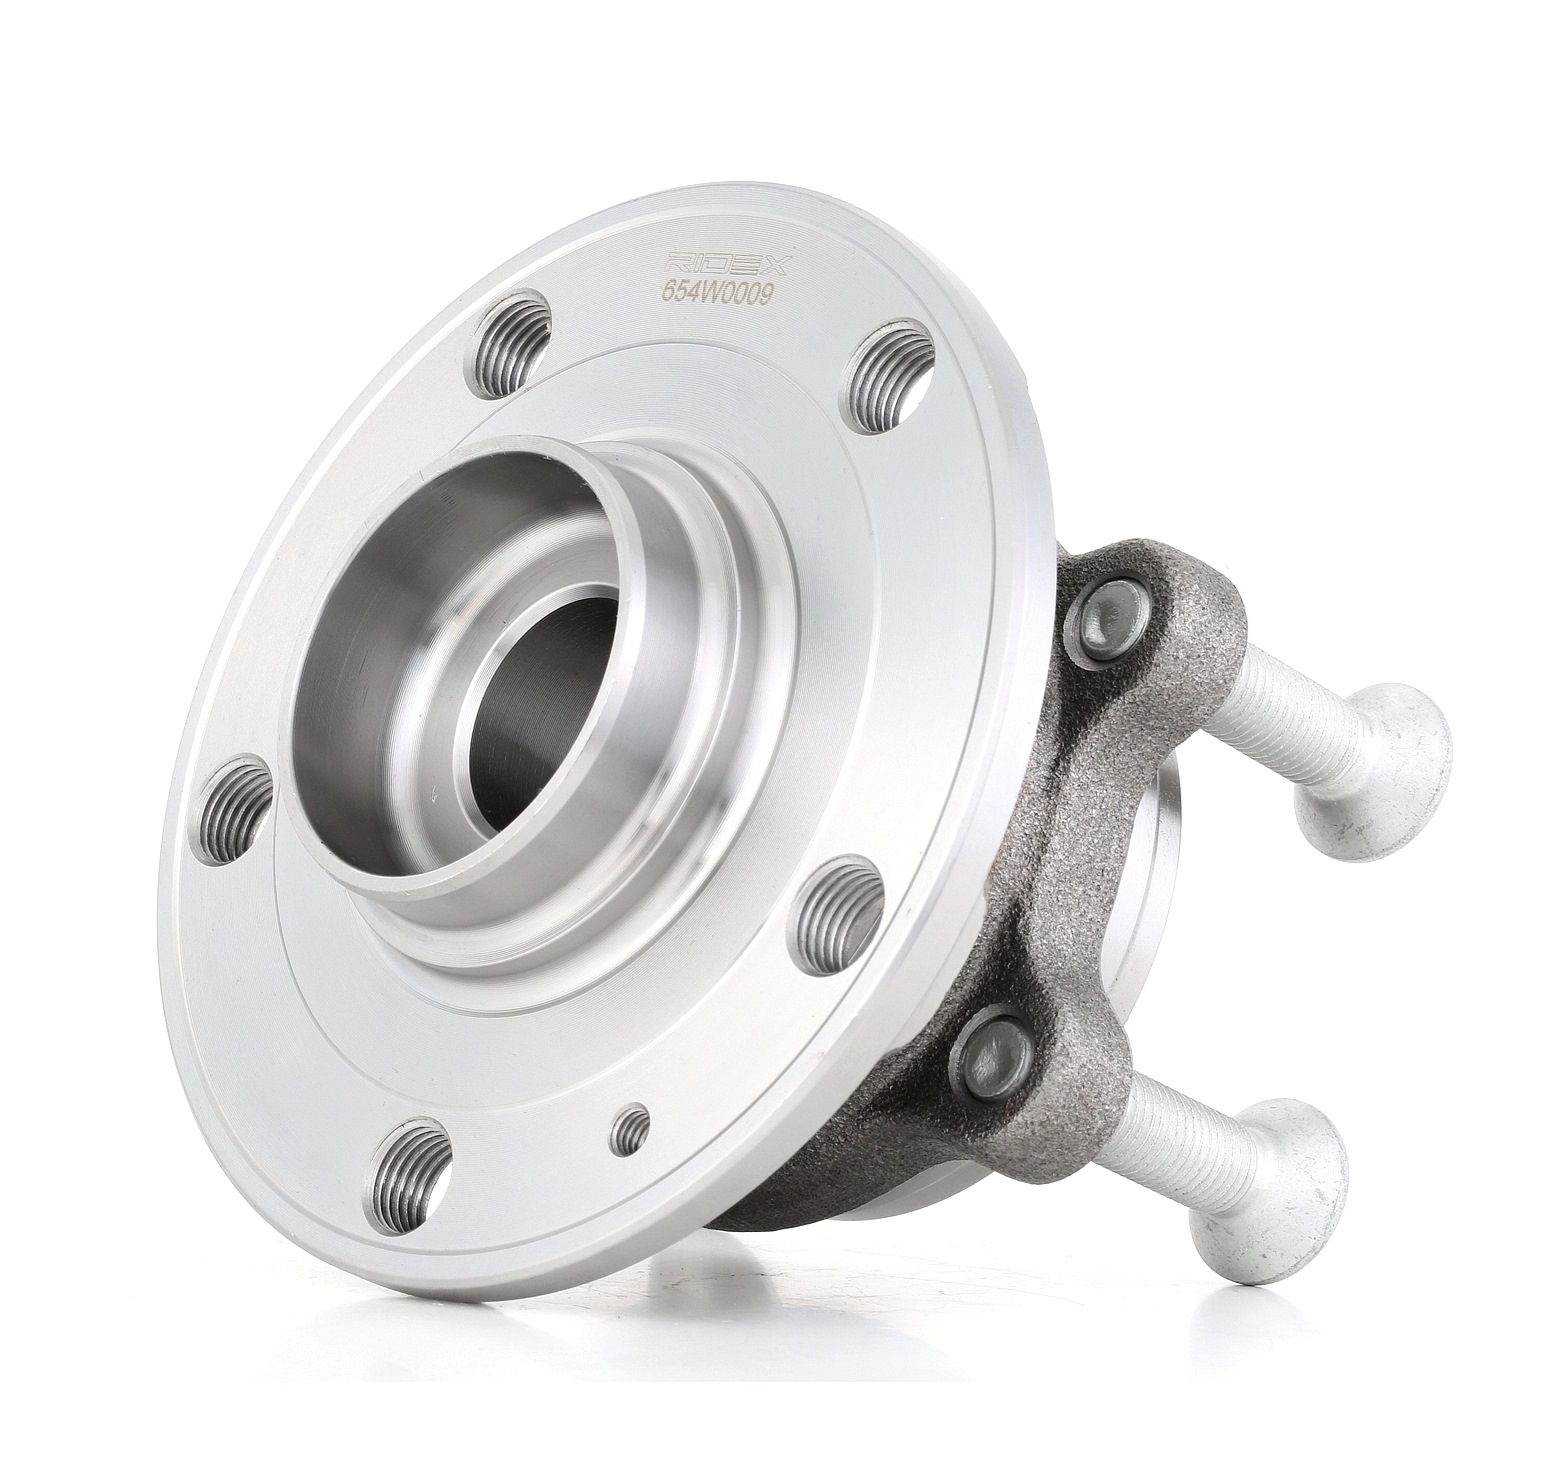 RIDEX 654W0009 original AUDI Wheel bearing kit with integrated magnetic sensor ring